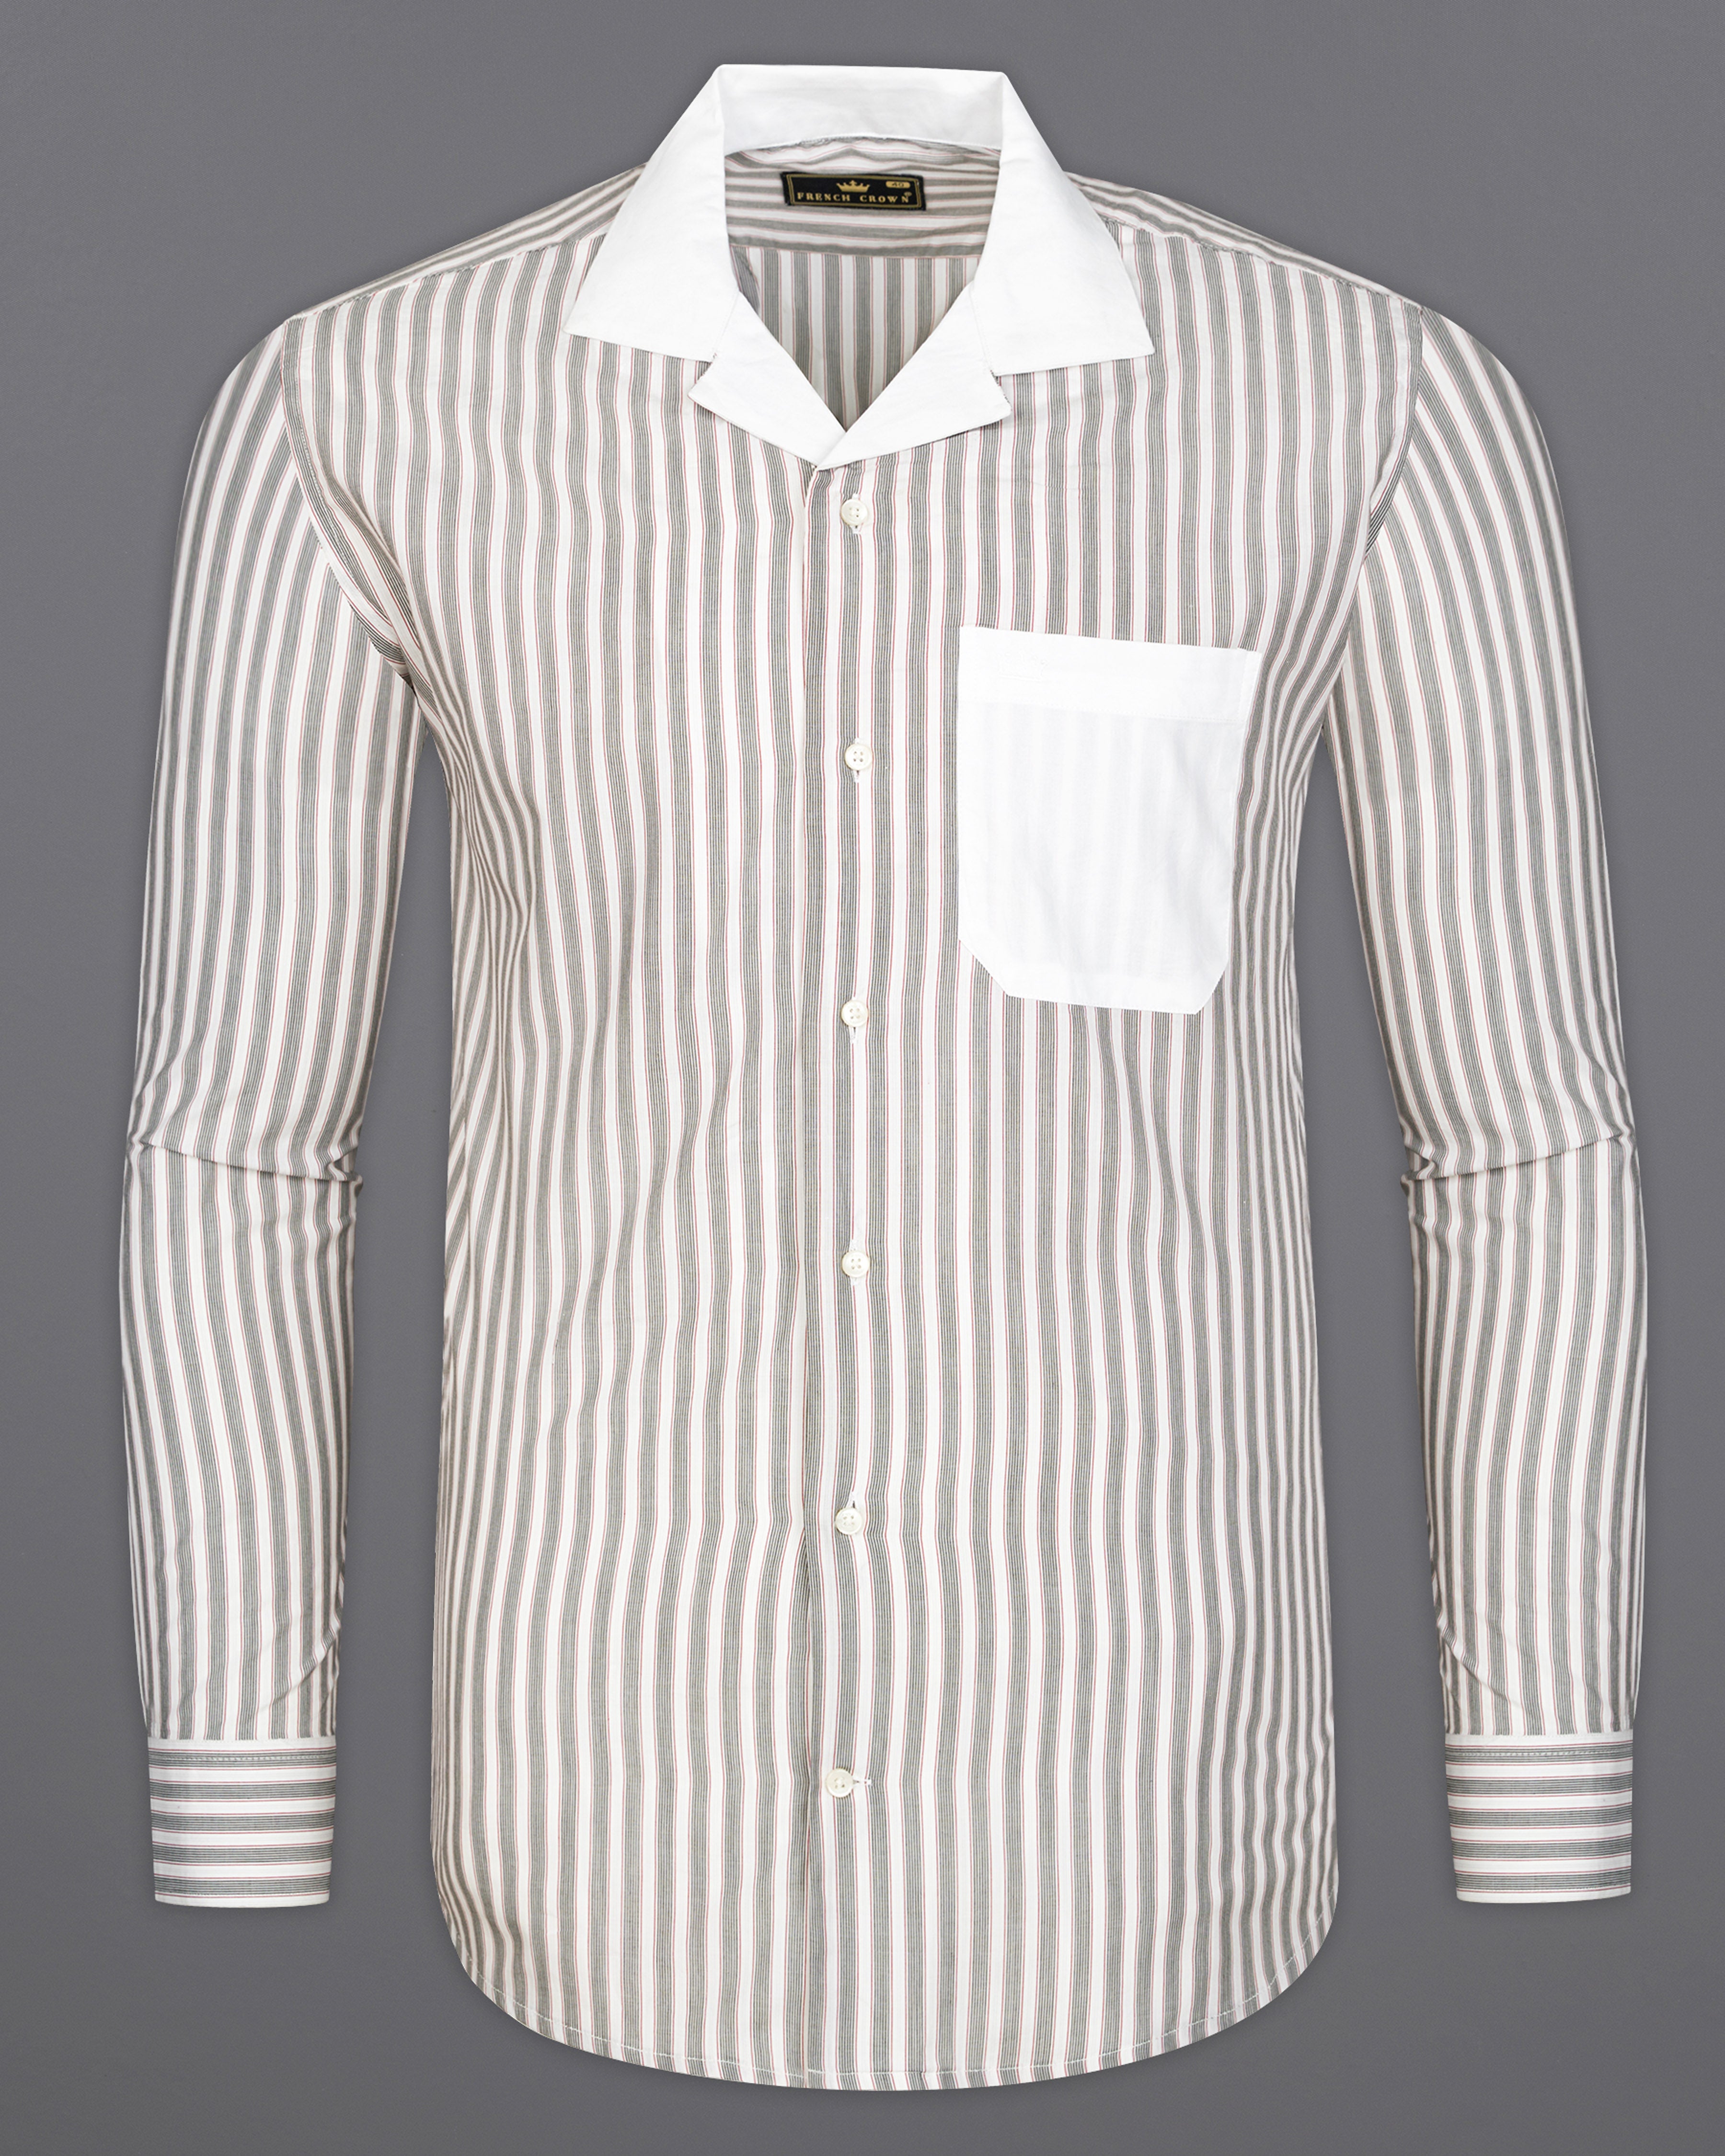 Bright White with Black Striped Premium Cotton Designer Shirt 9533-CC-P252-38, 9533-CC-P252-H-38, 9533-CC-P252-39, 9533-CC-P252-H-39, 9533-CC-P252-40, 9533-CC-P252-H-40, 9533-CC-P252-42, 9533-CC-P252-H-42, 9533-CC-P252-44, 9533-CC-P252-H-44, 9533-CC-P252-46, 9533-CC-P252-H-46, 9533-CC-P252-48, 9533-CC-P252-H-48, 9533-CC-P252-50, 9533-CC-P252-H-50, 9533-CC-P252-52, 9533-CC-P252-H-52